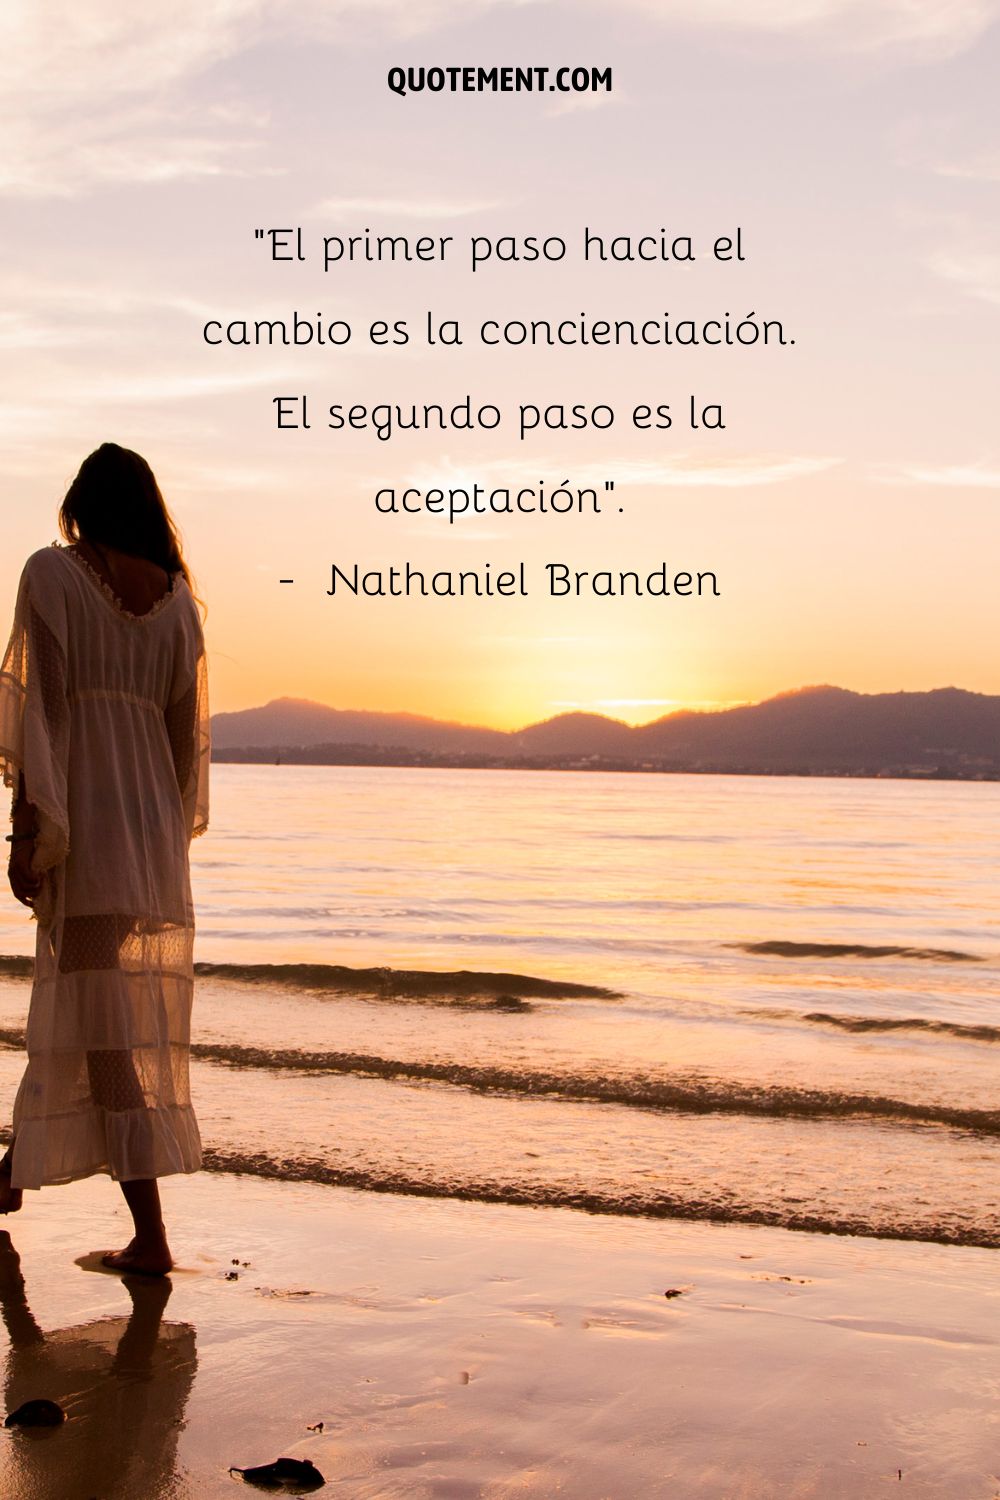 "El primer paso hacia el cambio es la concienciación. El segundo paso es la aceptación". - Nathaniel Branden